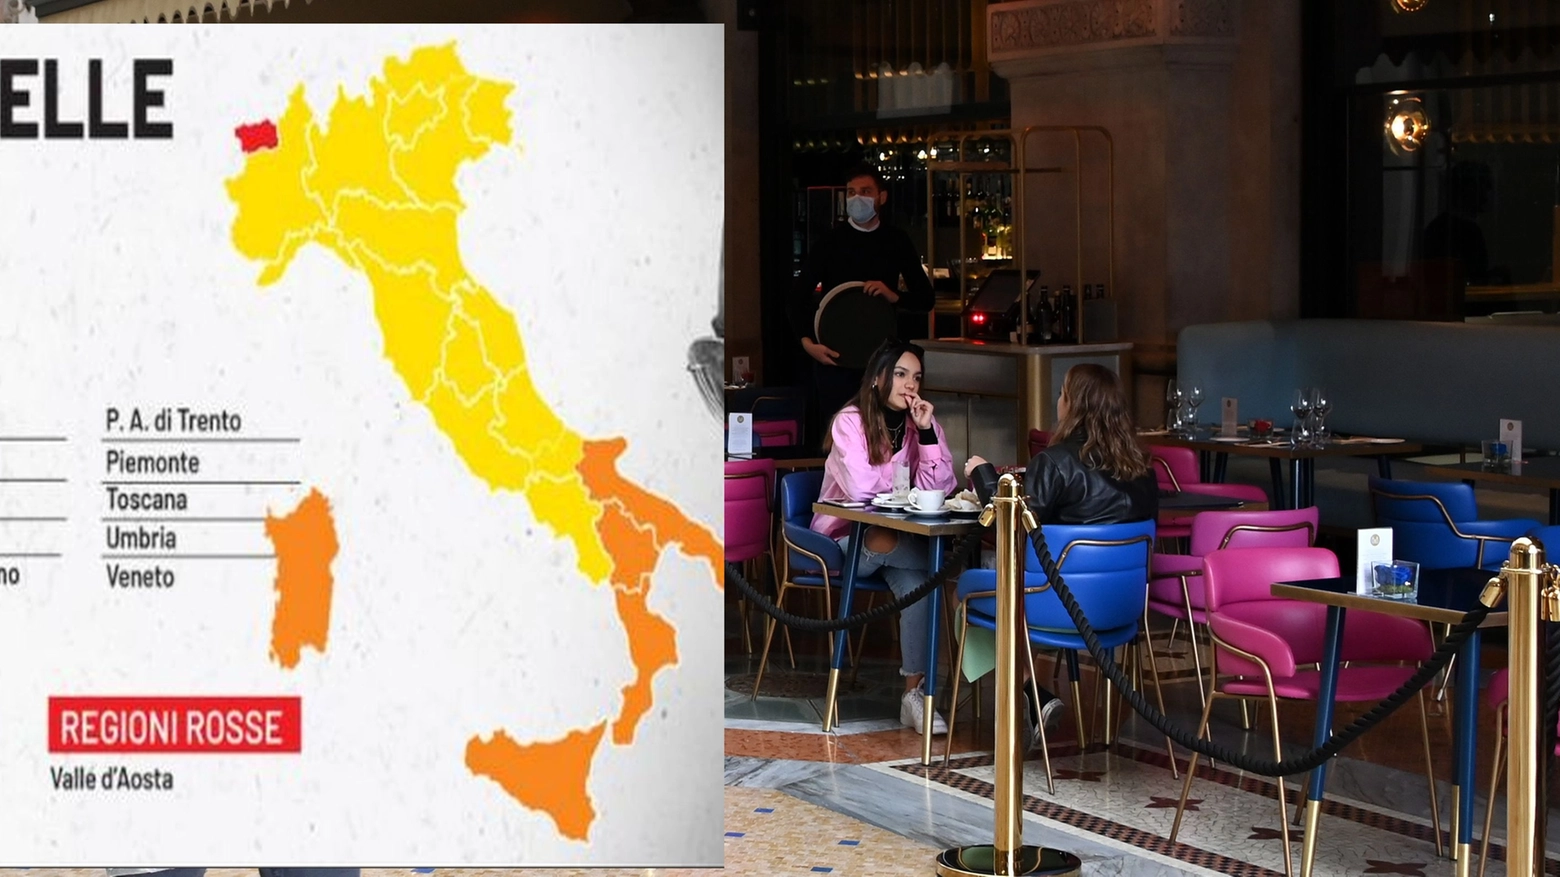 La nuova mappa dell'Italia dal 3 maggio